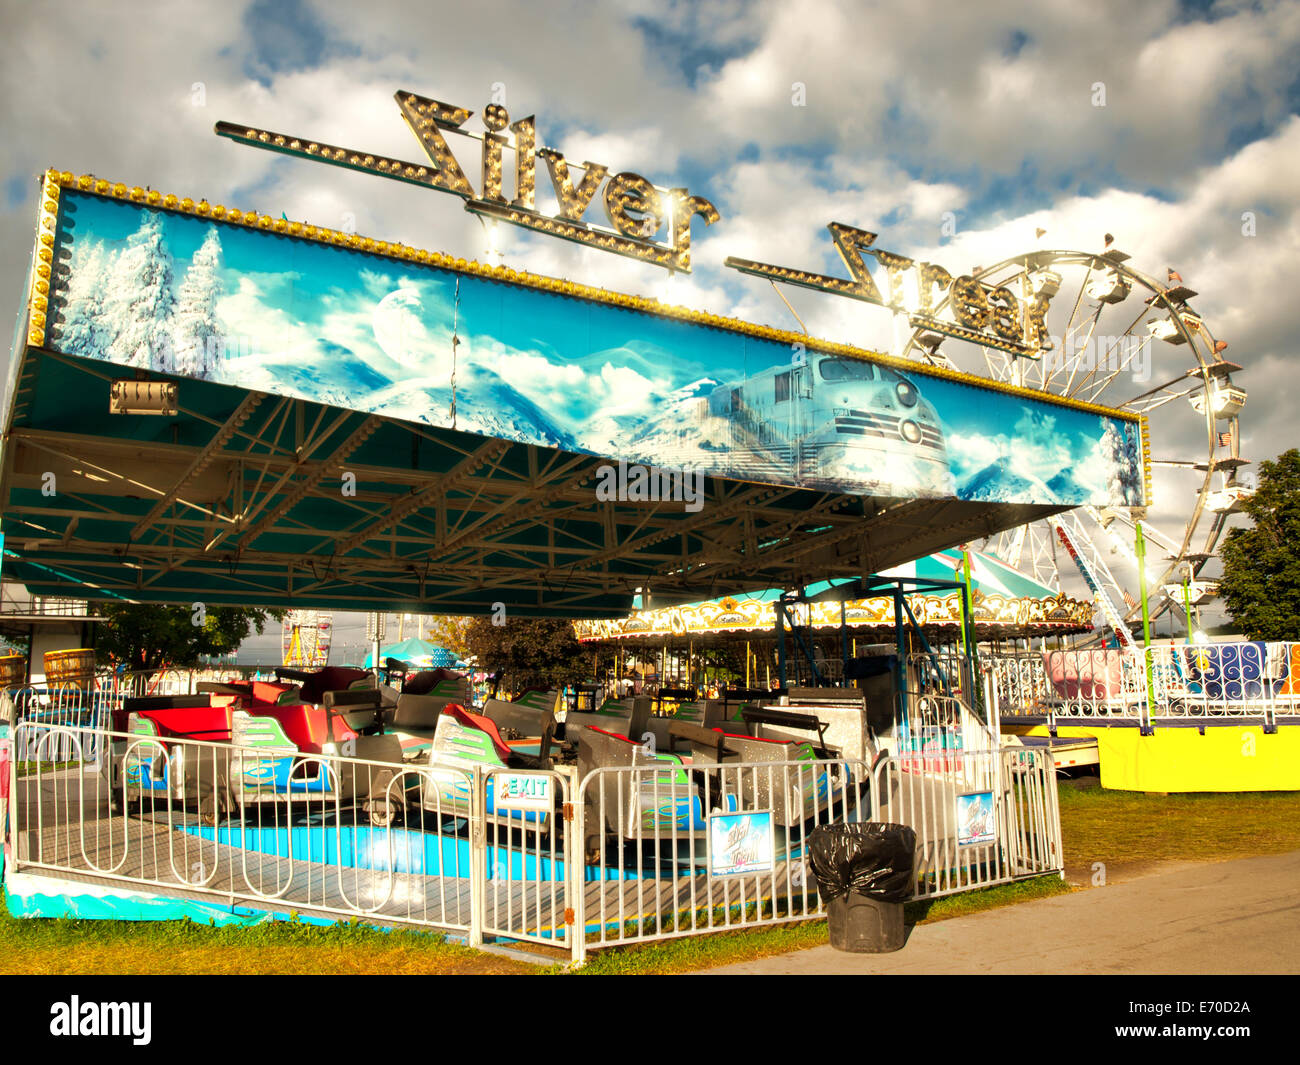 Silver Streak amusement park ride Banque D'Images